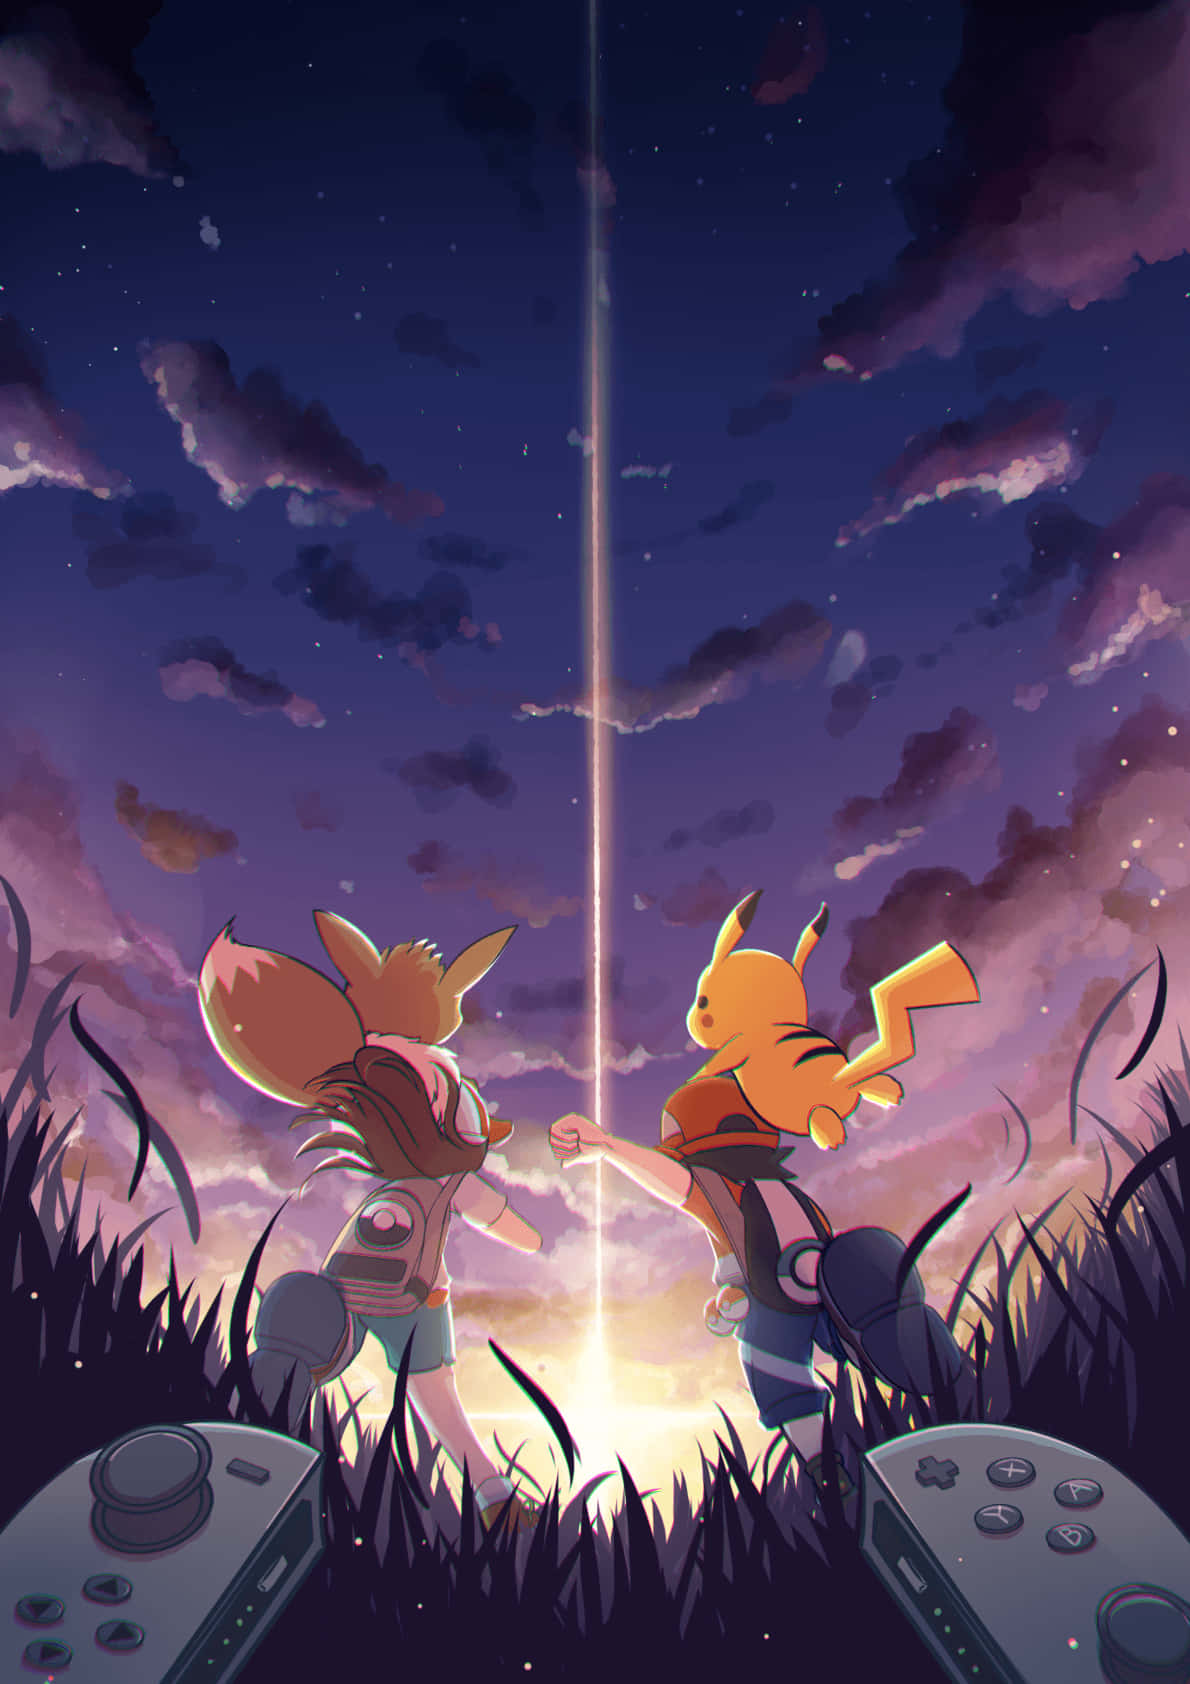 Åh, to af de sødeste Pokemon venner, der leger sammen! Wallpaper